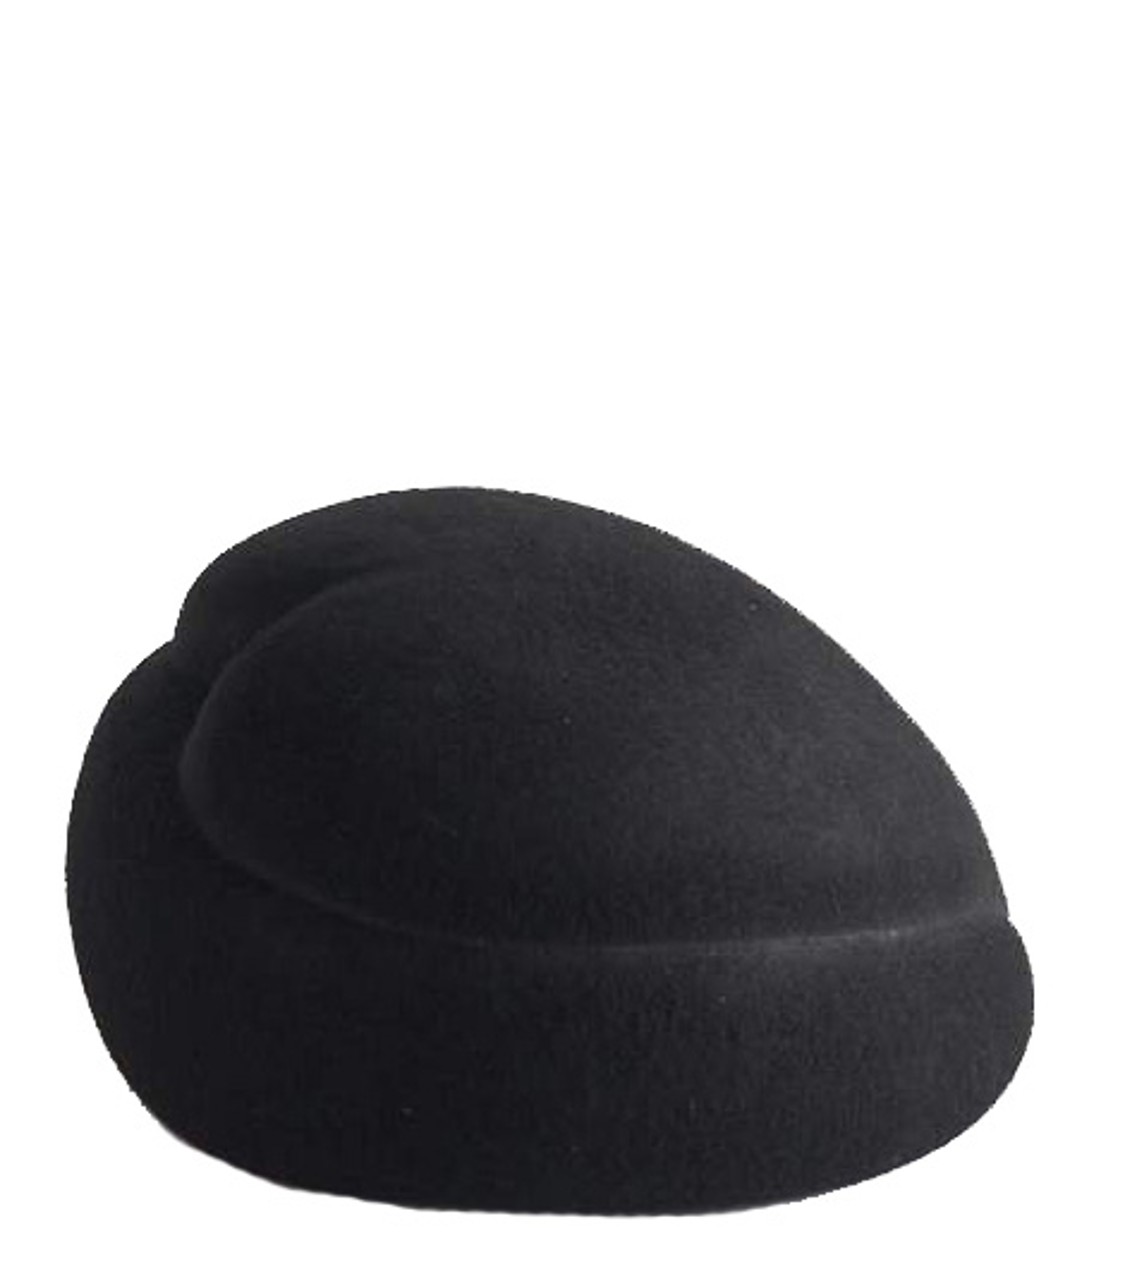 shop Flapper Saldi Accessori: Accessori Flapper, cappello, modello Julie, in lana nera, caratterizzato dalla forma di cuore stilizzato.

Composizione: 100% lana. number 1948